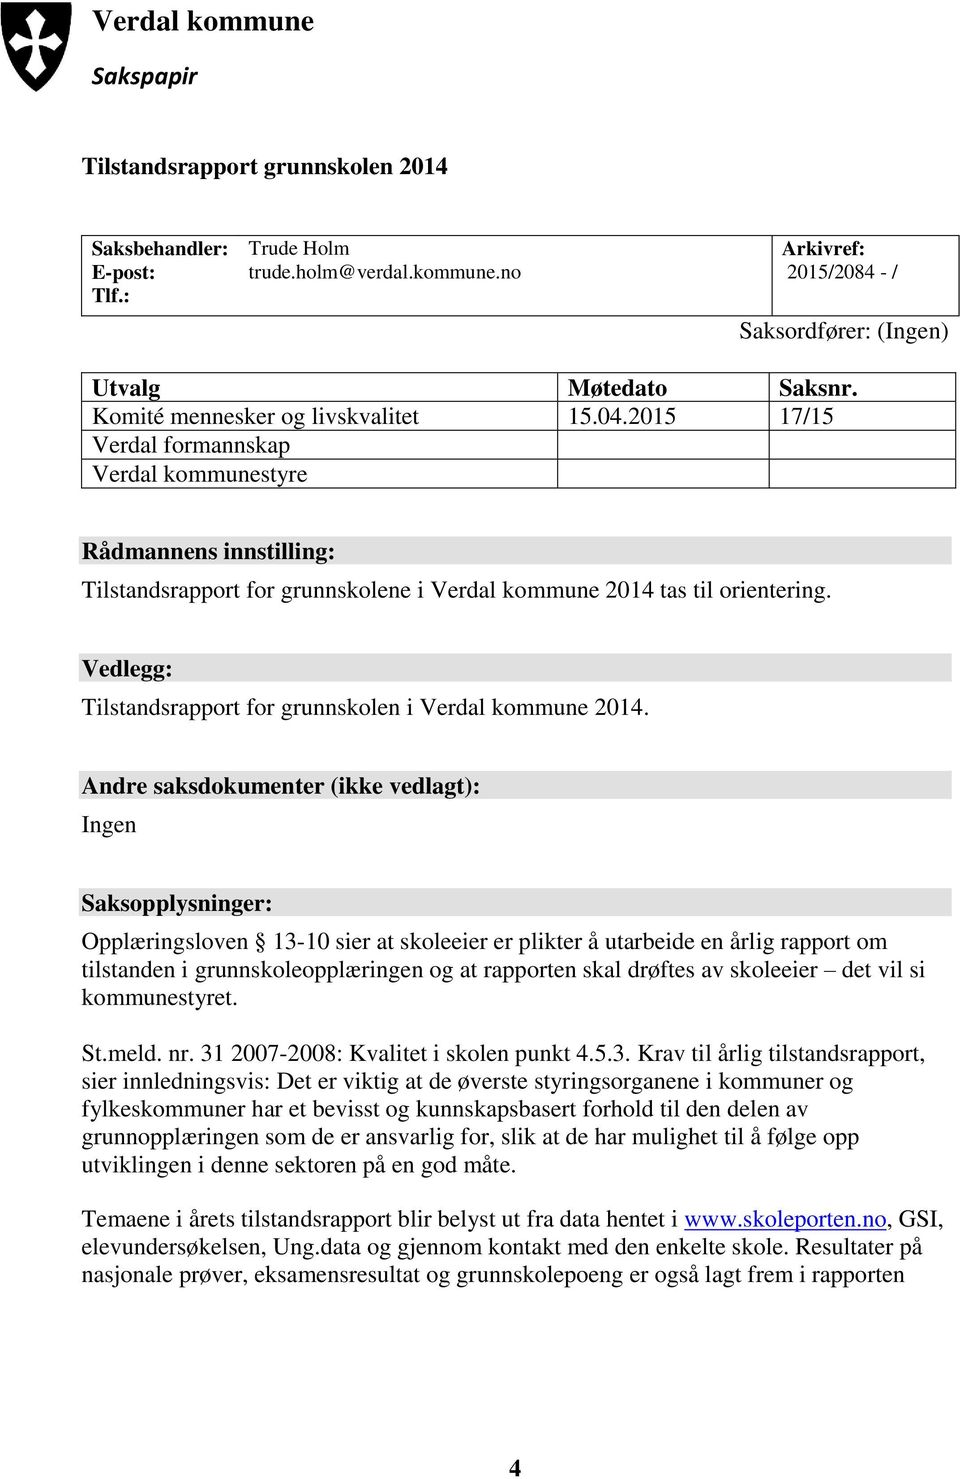 Vedlegg: Tilstandsrapport for grunnskolen i Verdal kommune 2014.